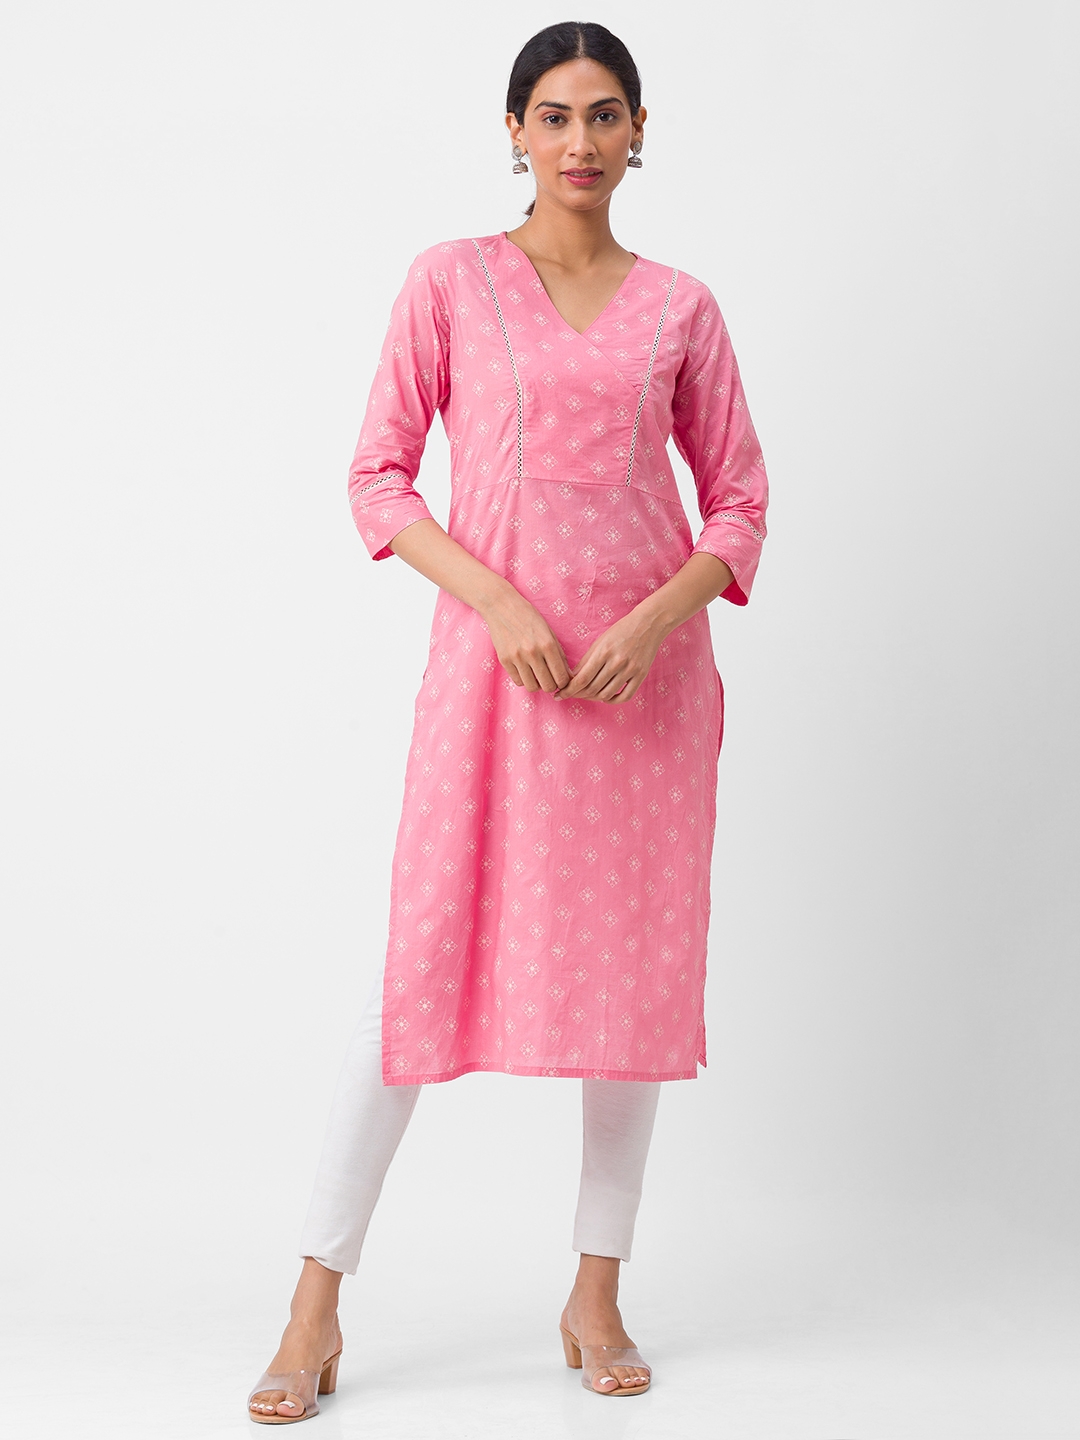 globus | Women's Pink Cotton Printed Kurtas 0